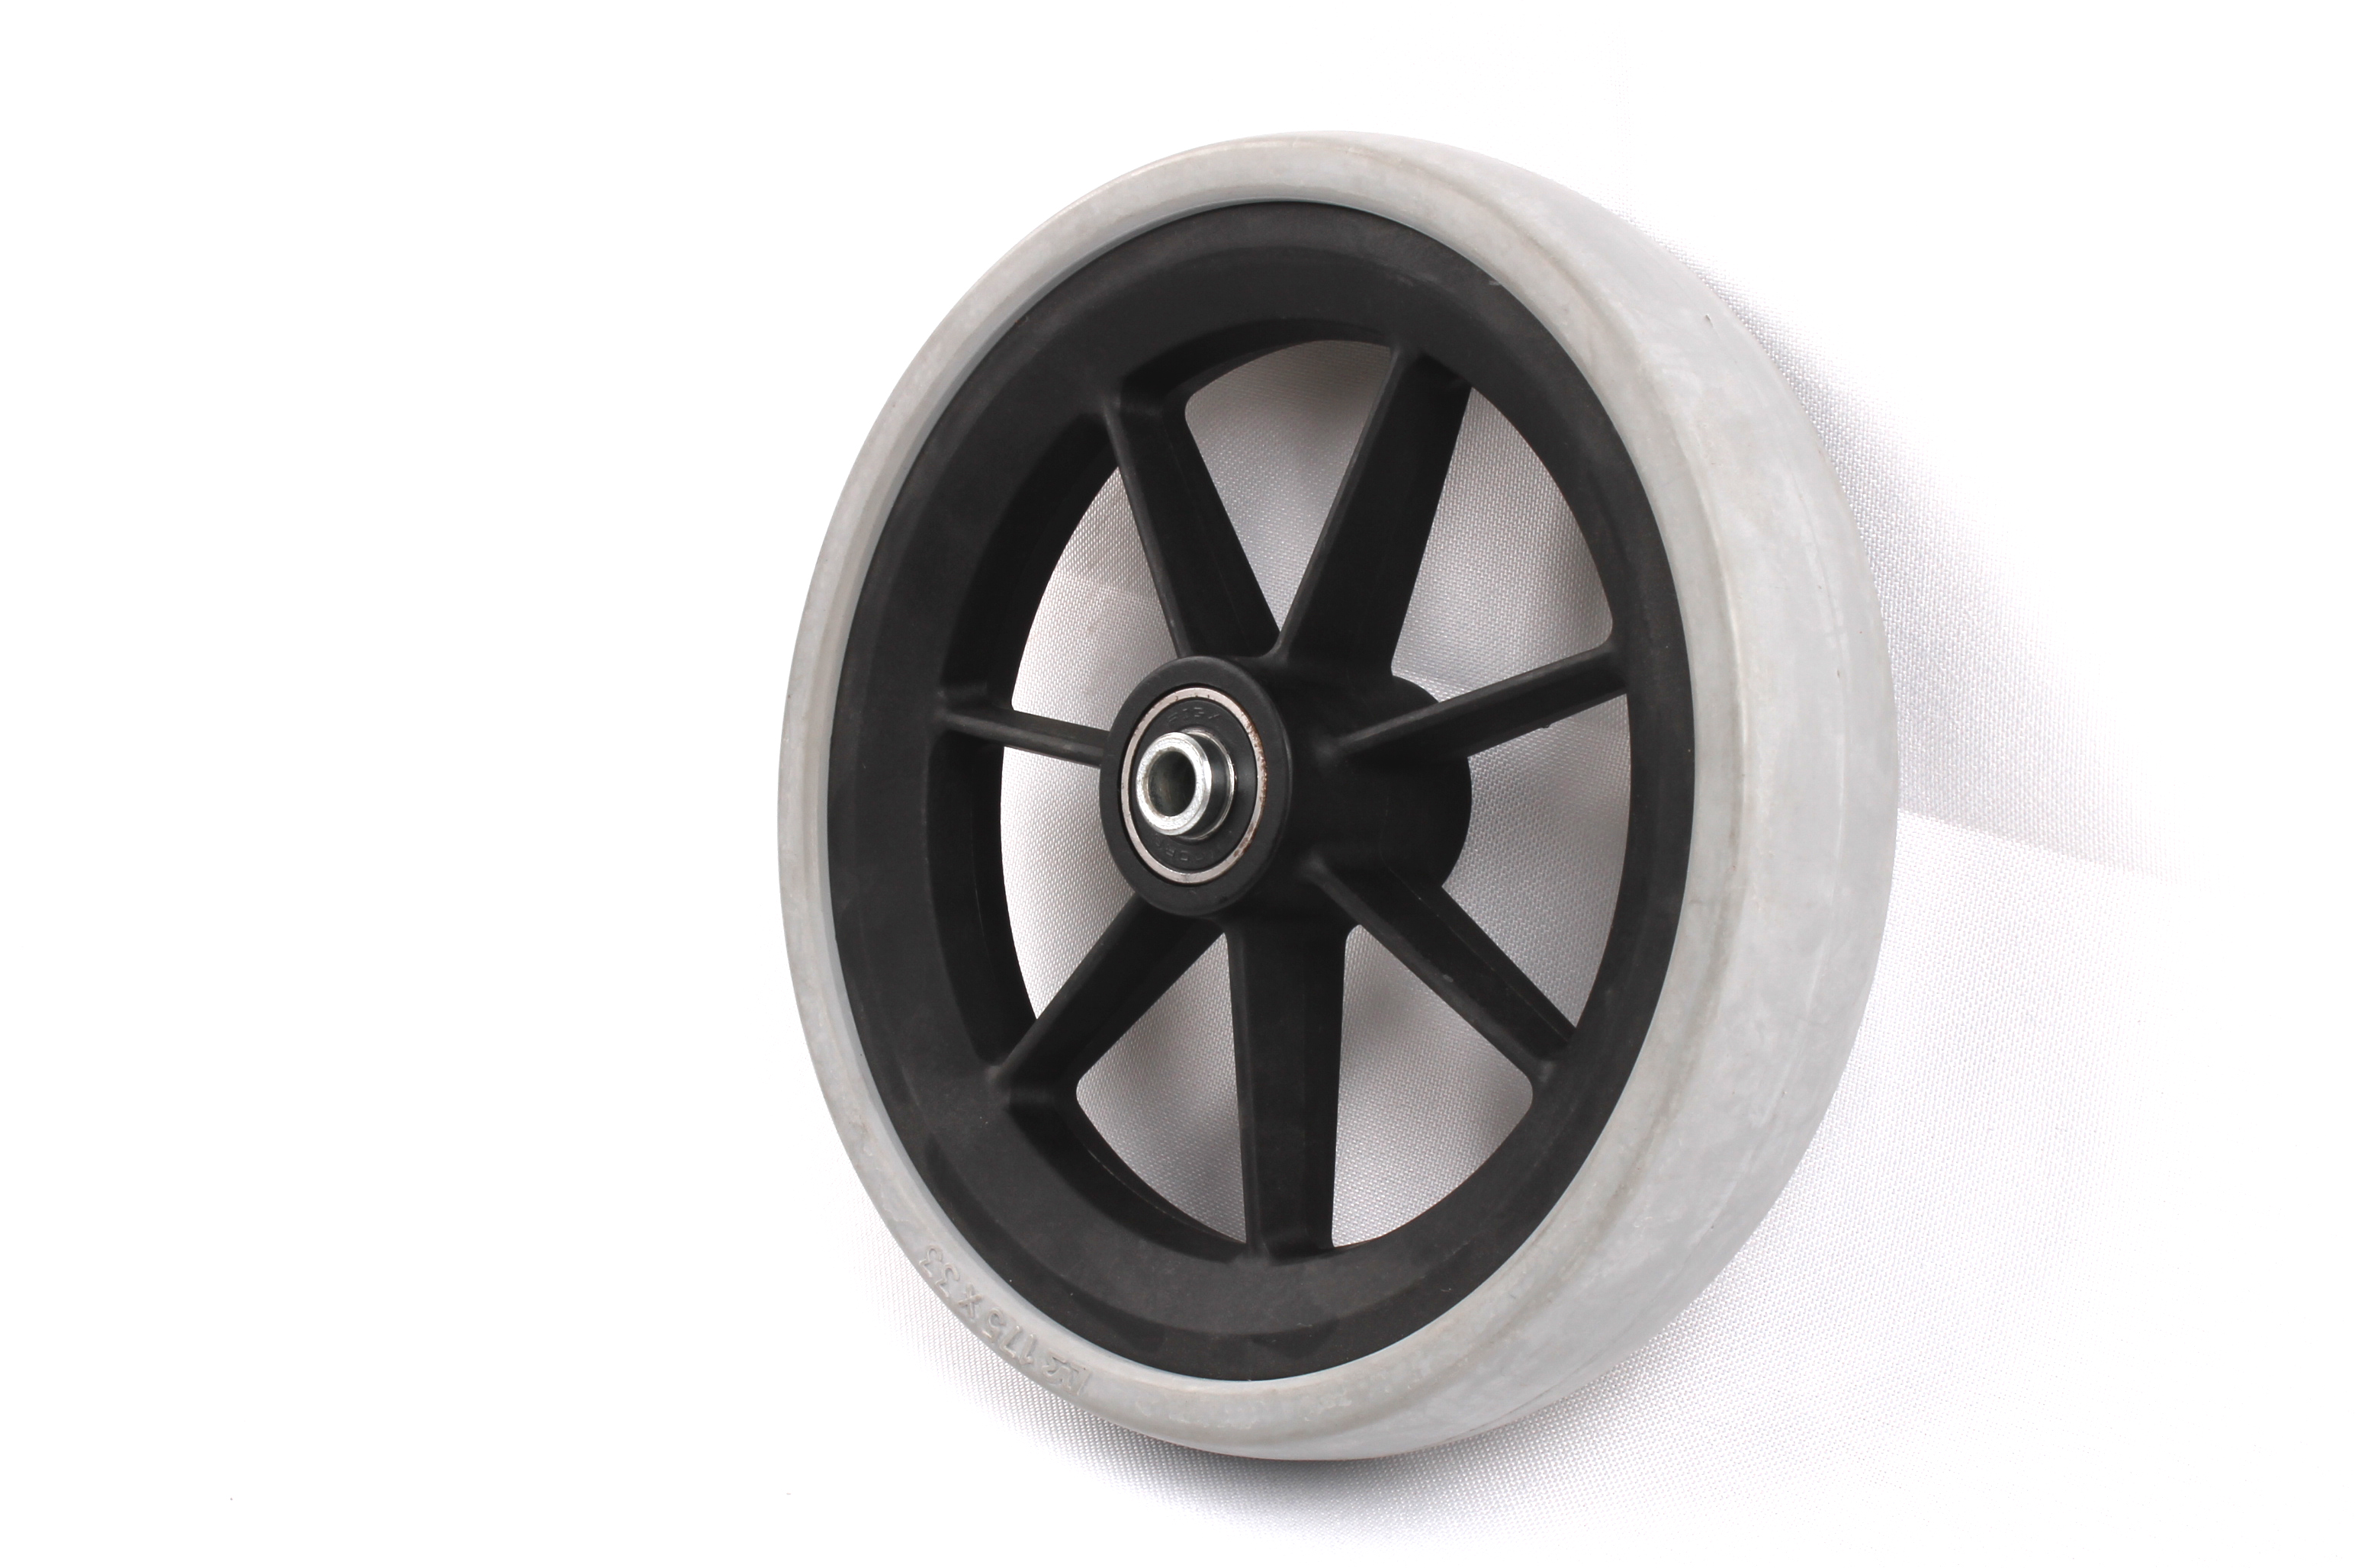 Ambiental pu china pneu feito pela fabricante de pneus profissional projetado pneu contínuo